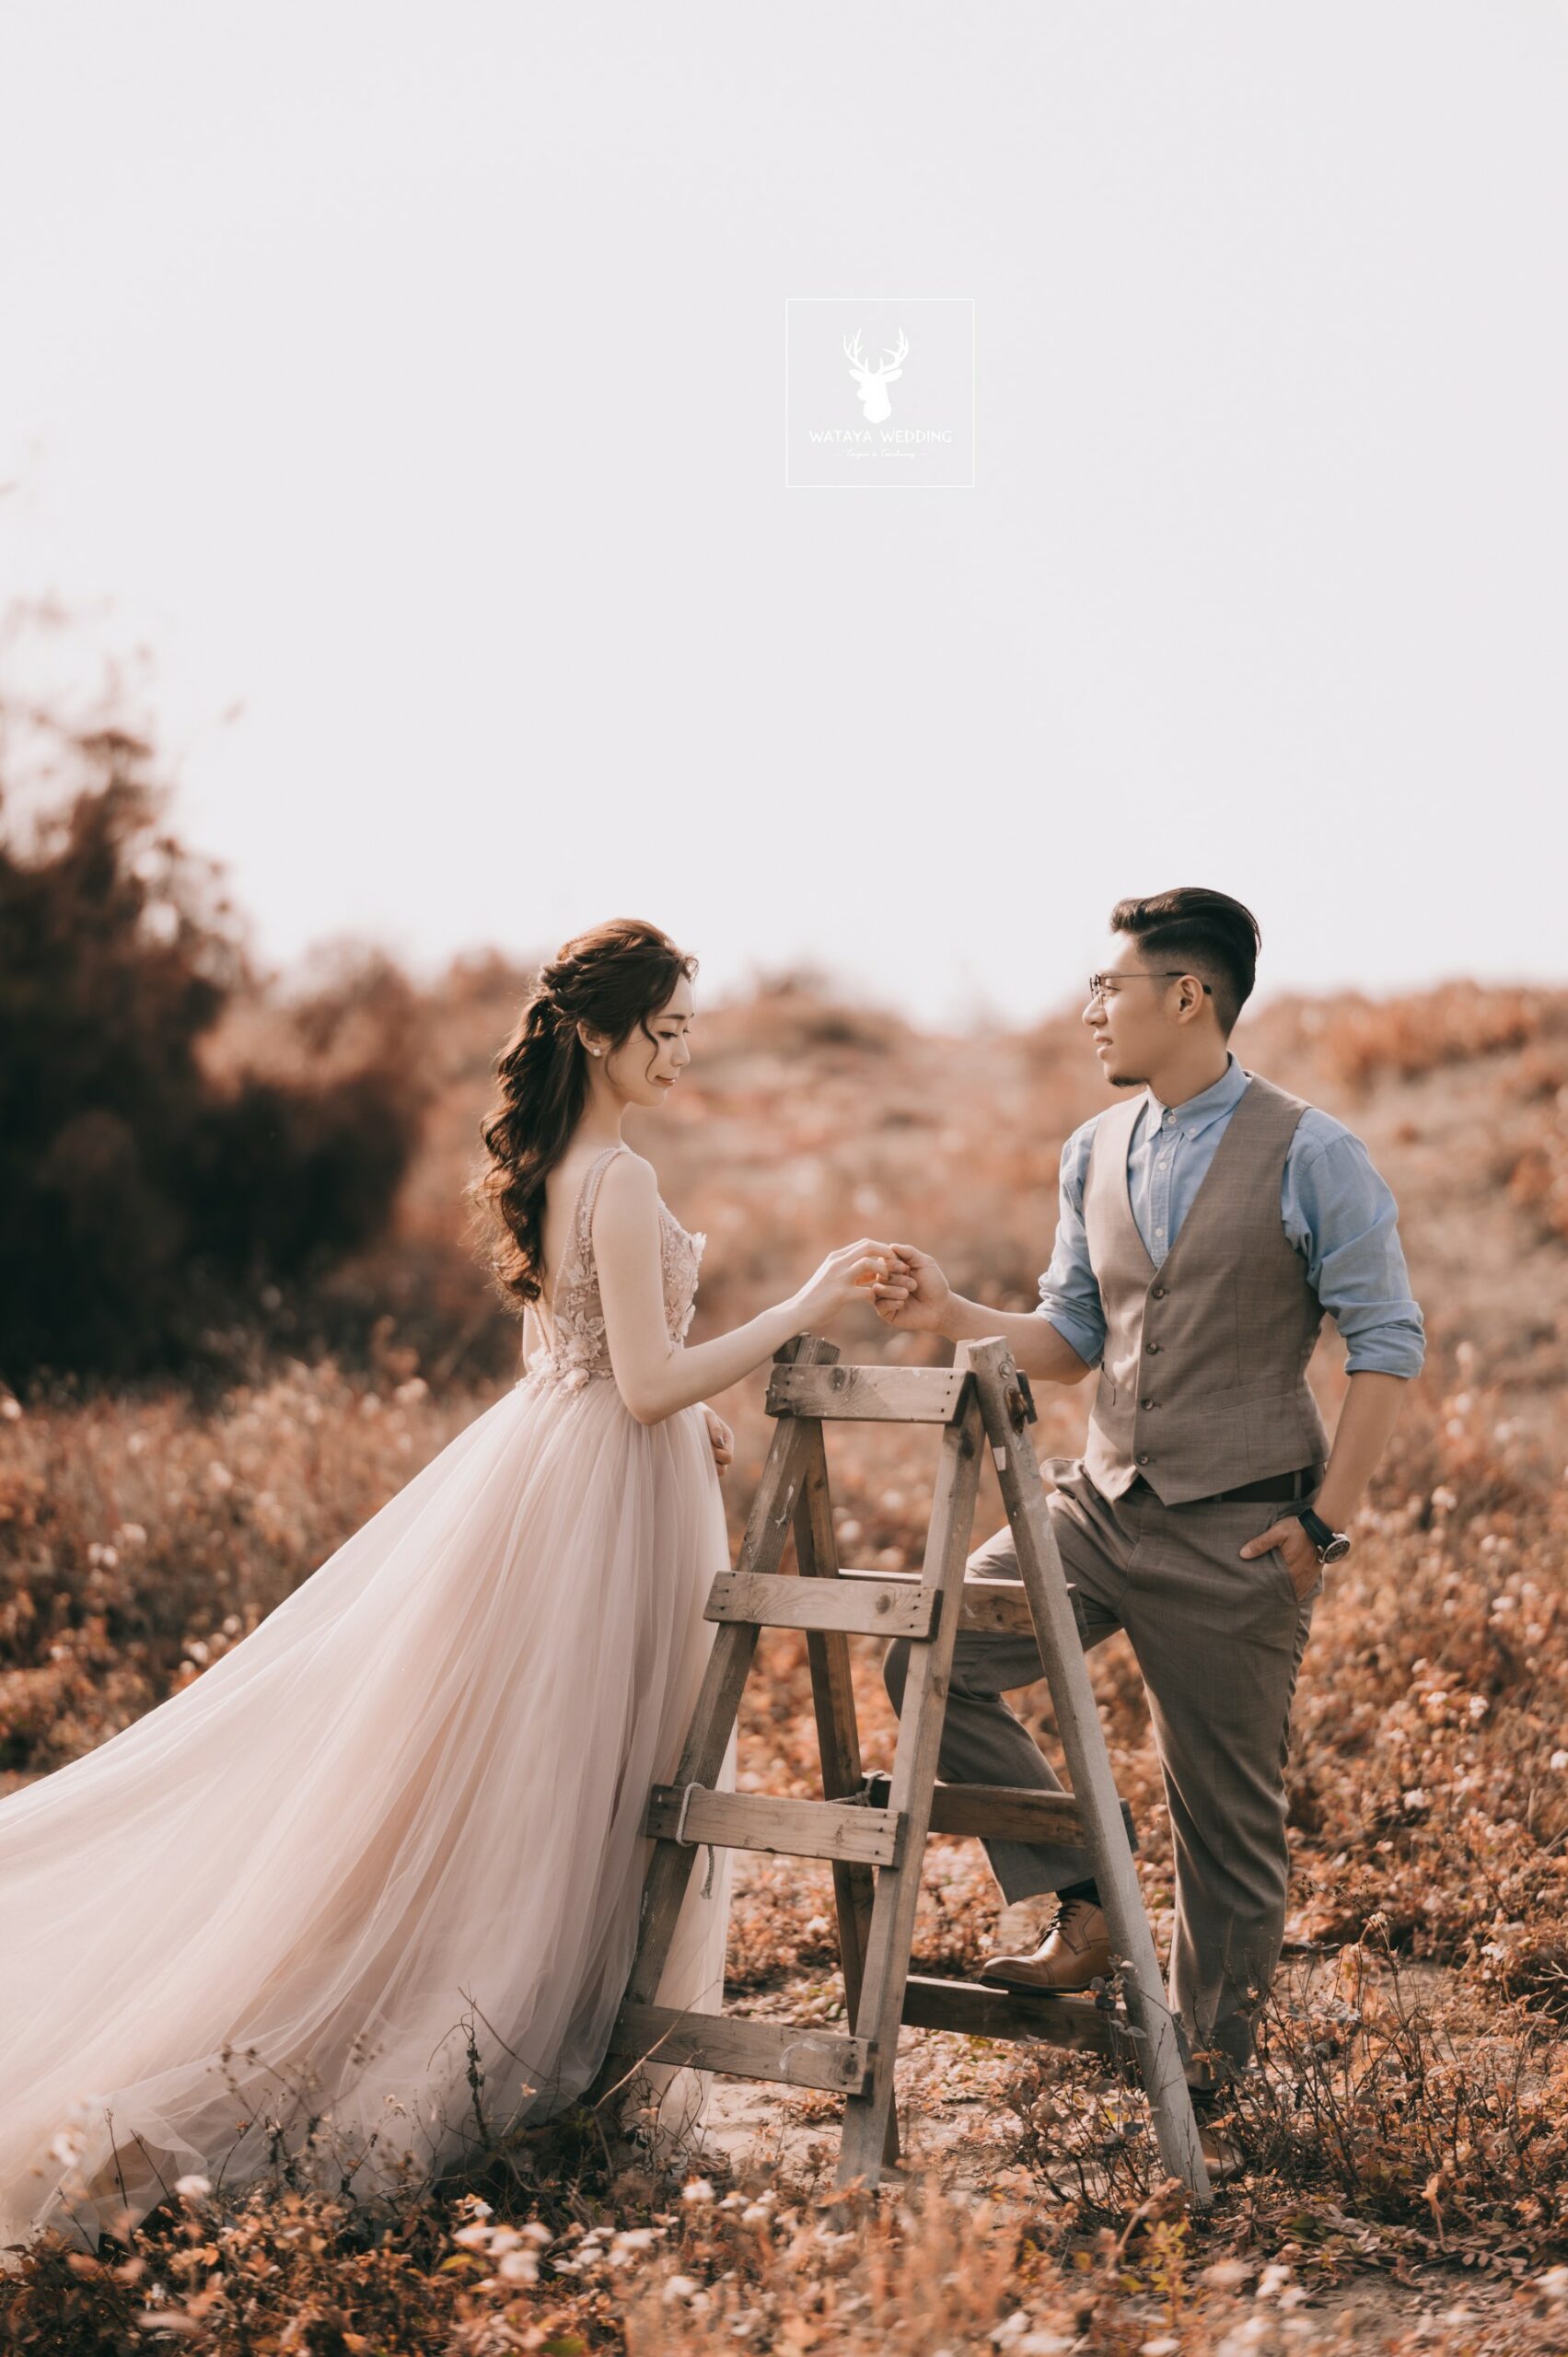 綿谷結婚式-婚紗攝影作品 (17)